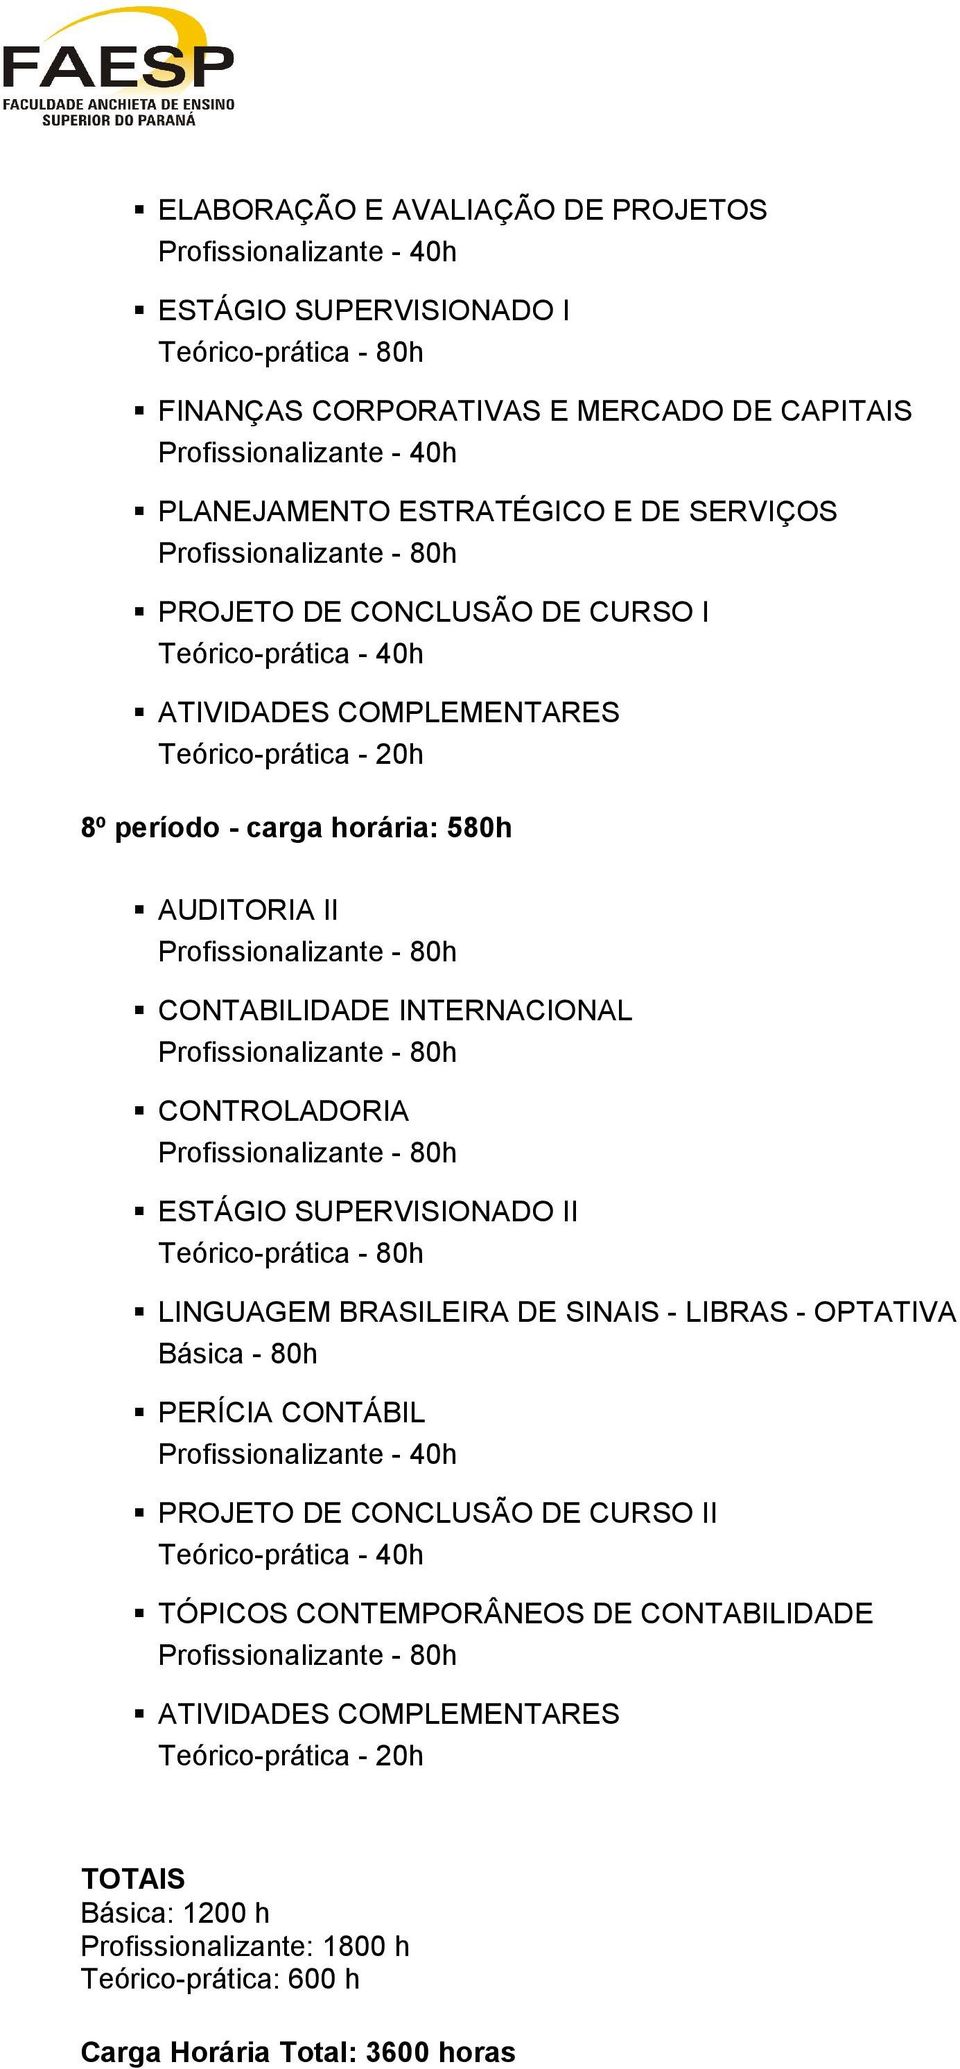 INTERNACIONAL CONTROLADORIA ESTÁGIO SUPERVISIONADO II Teórico-prática - 80h LINGUAGEM BRASILEIRA DE SINAIS - LIBRAS - OPTATIVA PERÍCIA CONTÁBIL Profissionalizante - 40h PROJETO DE CONCLUSÃO DE